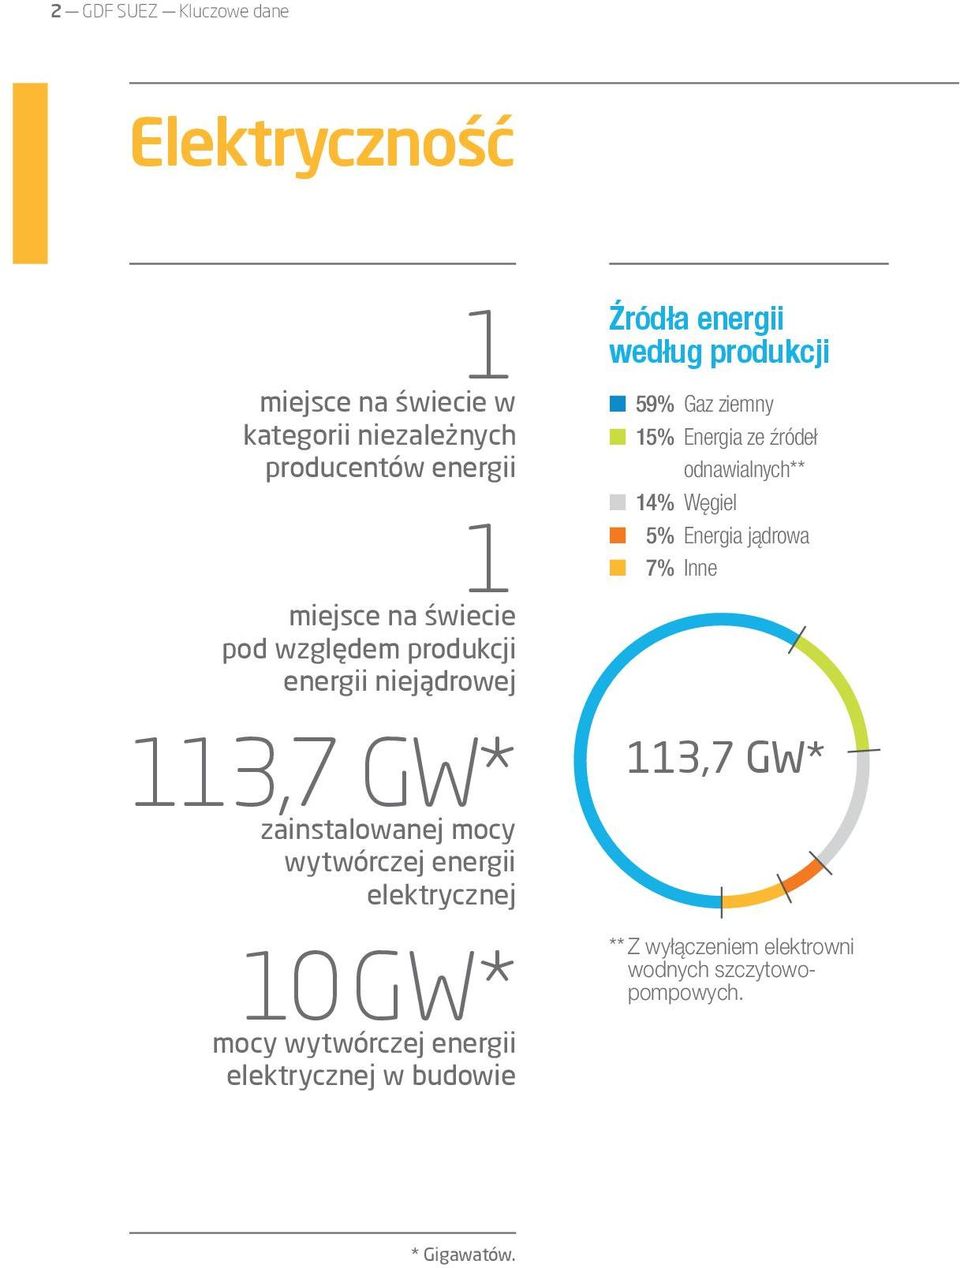 mocy wytwórczej energii elektrycznej w budowie Źródła energii według produkcji 59% Gaz ziemny 15% Energia ze źródeł